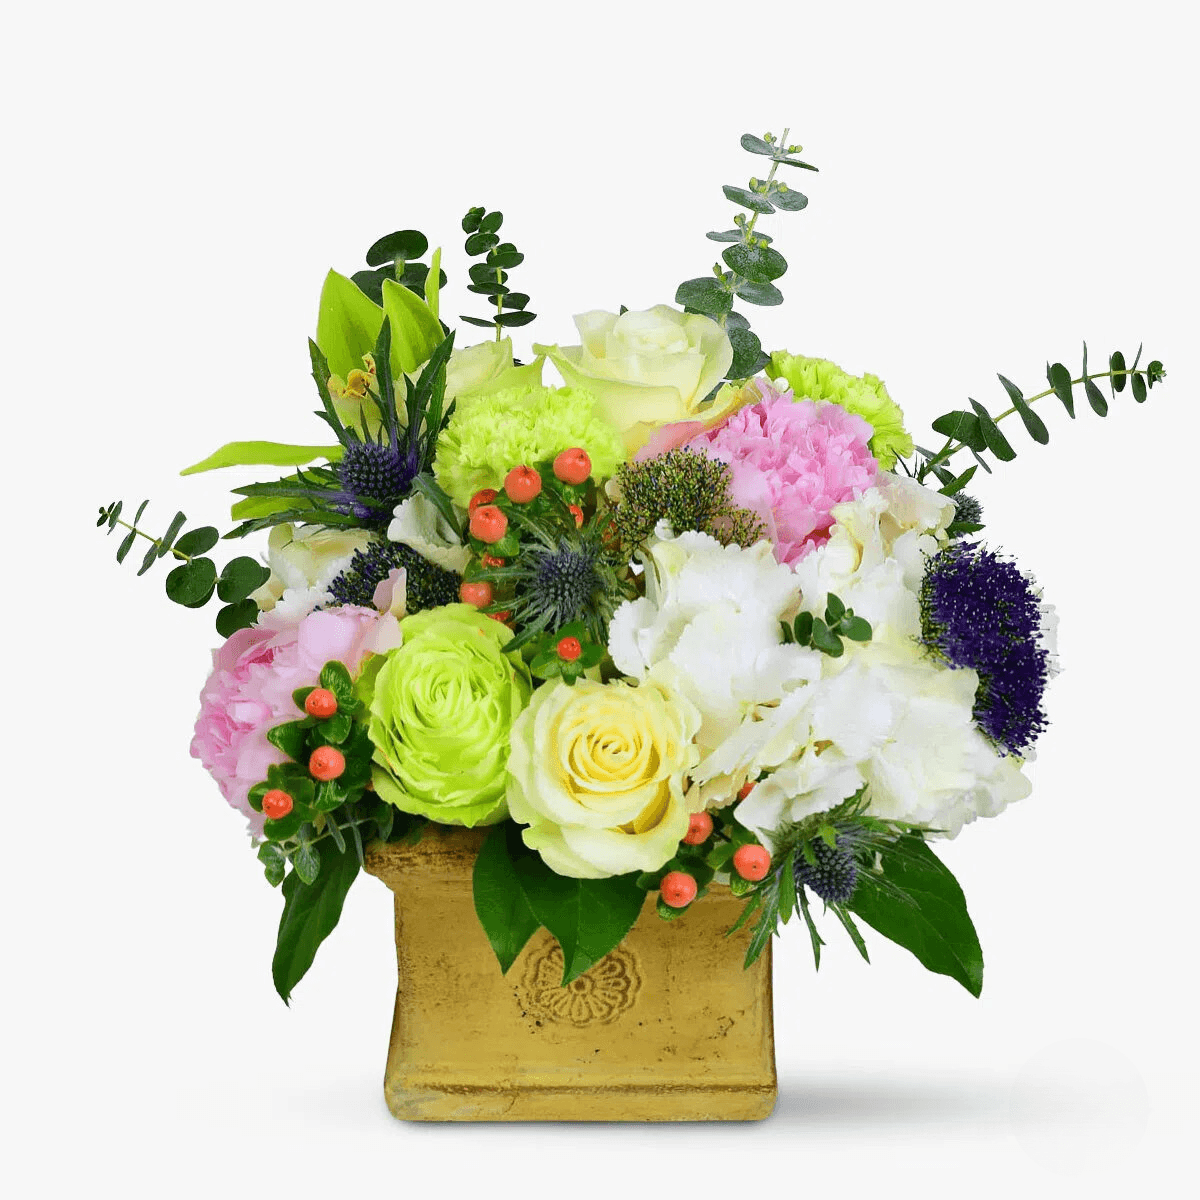 Aranjament floral – Florile coroanei – Standard Aranjament imagine 2022